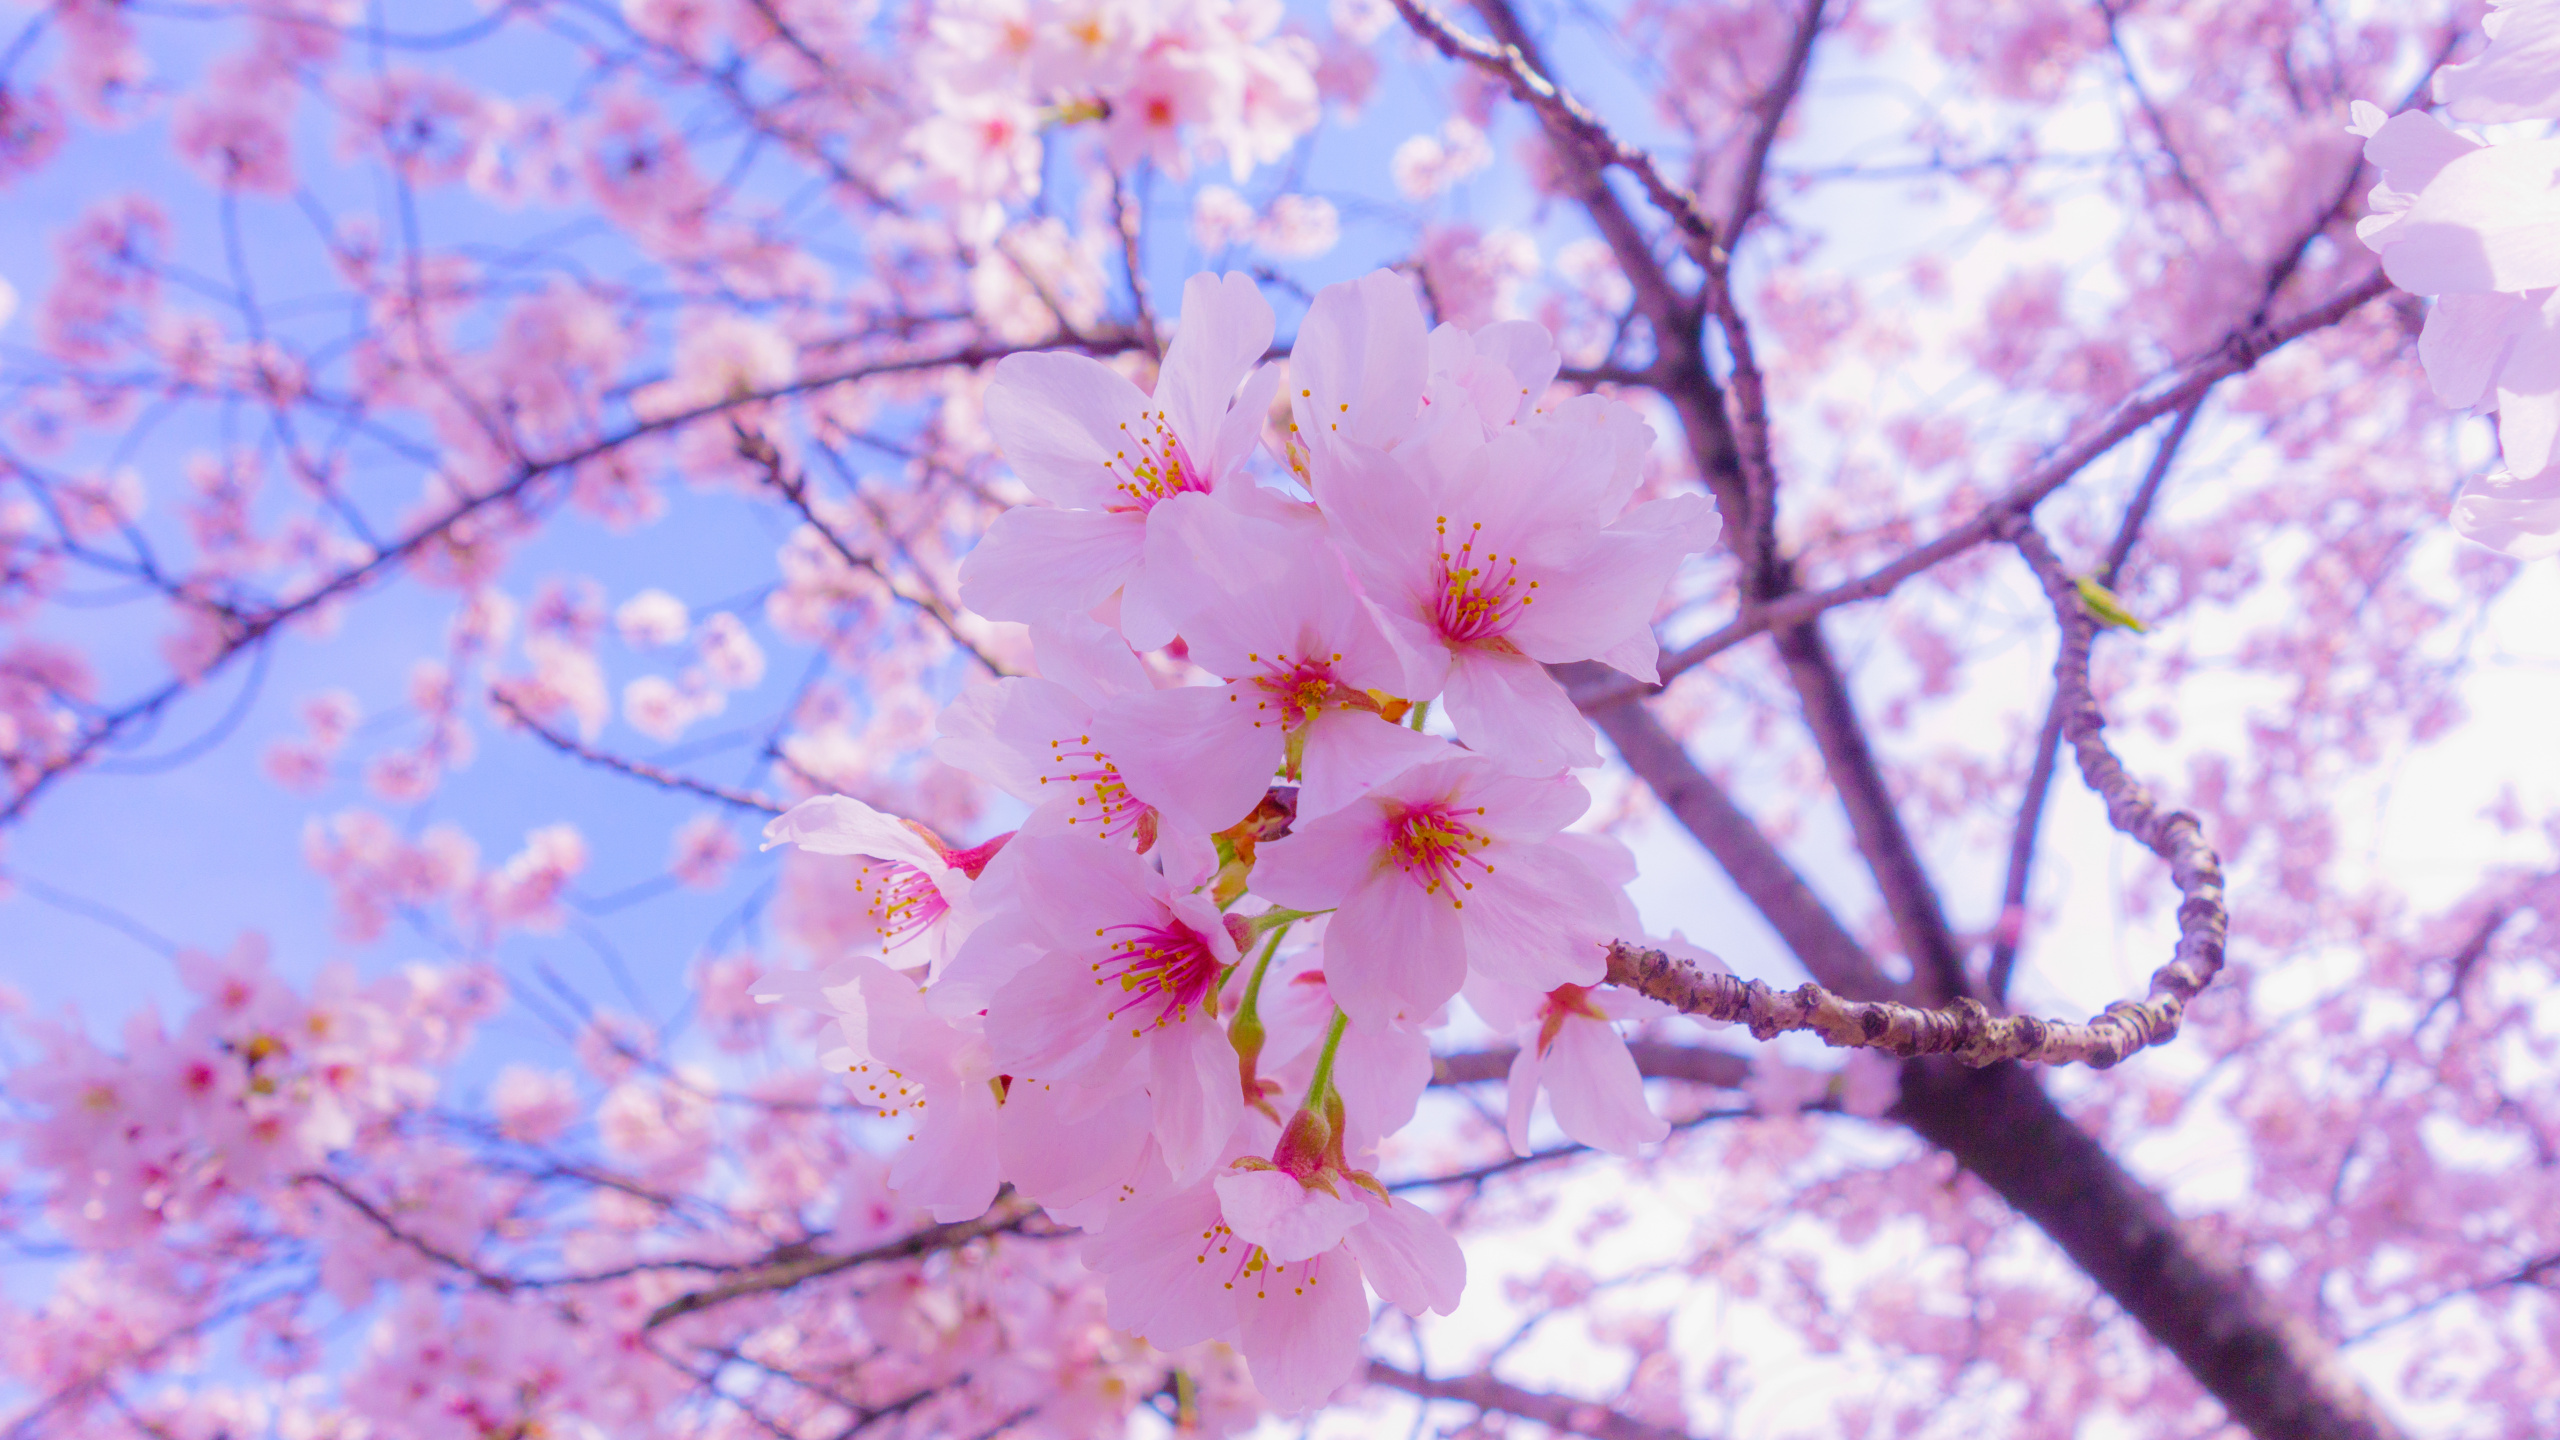 樱花, 开花, 粉红色, 弹簧, 树枝 壁纸 2560x1440 允许